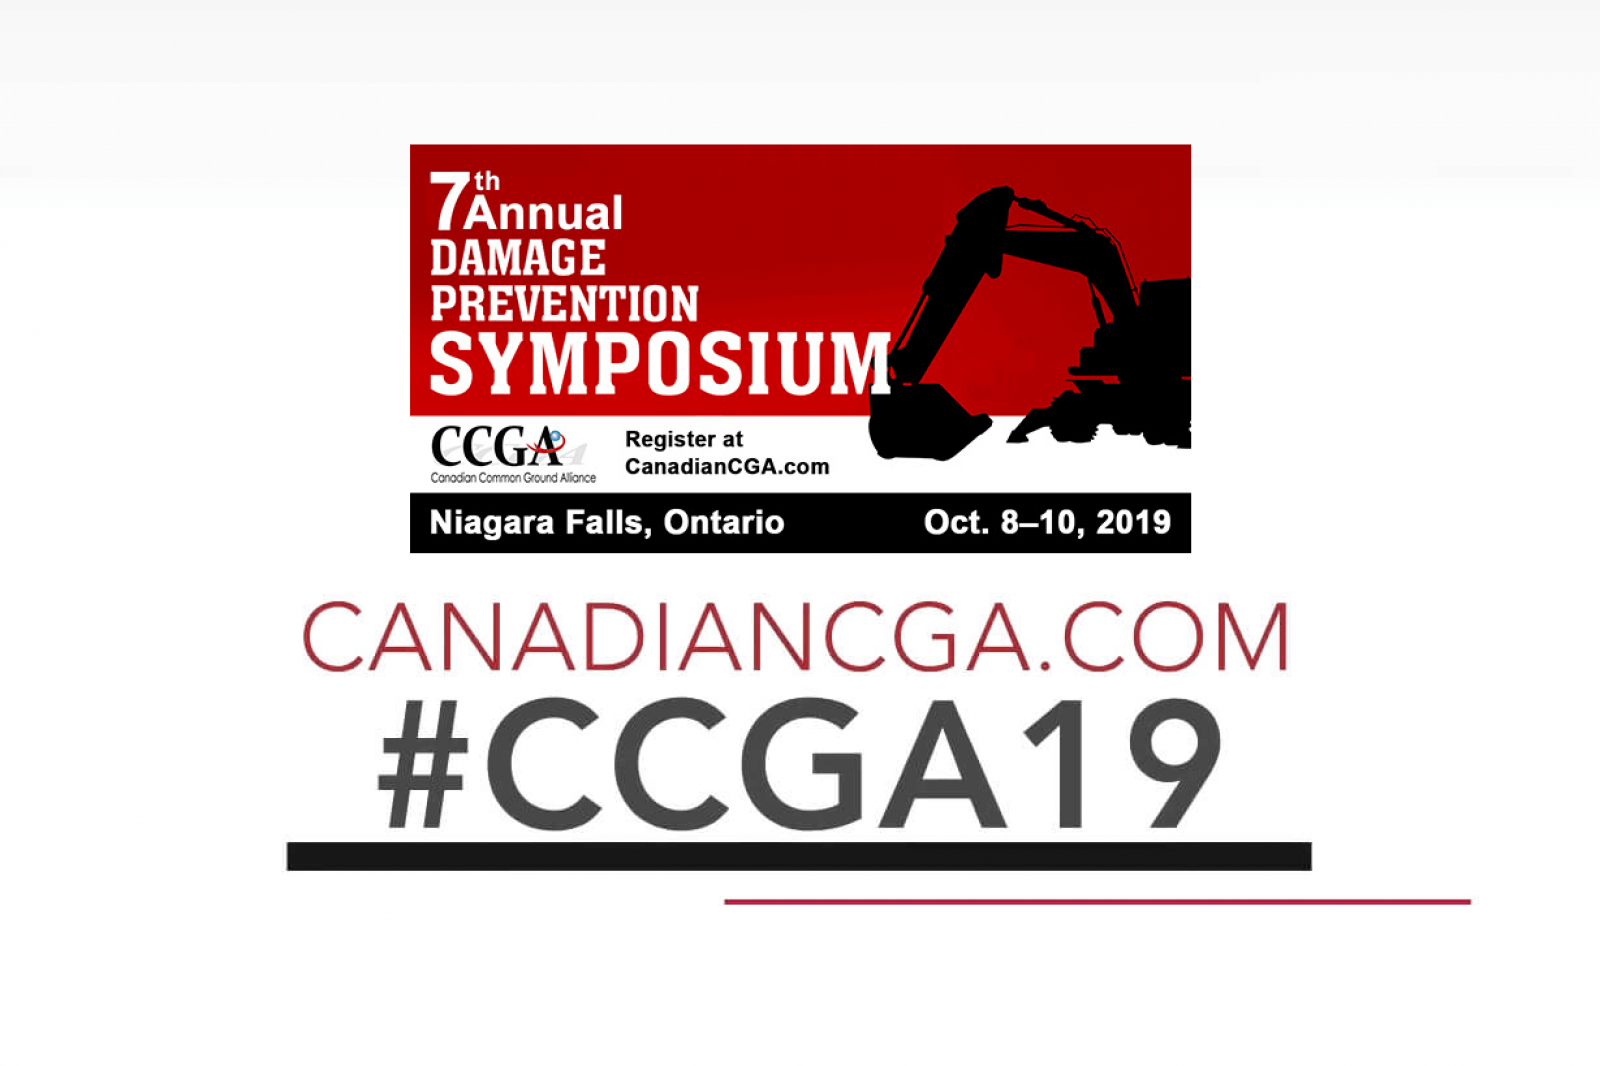 CCGA Damage Prevention Symposium 2019